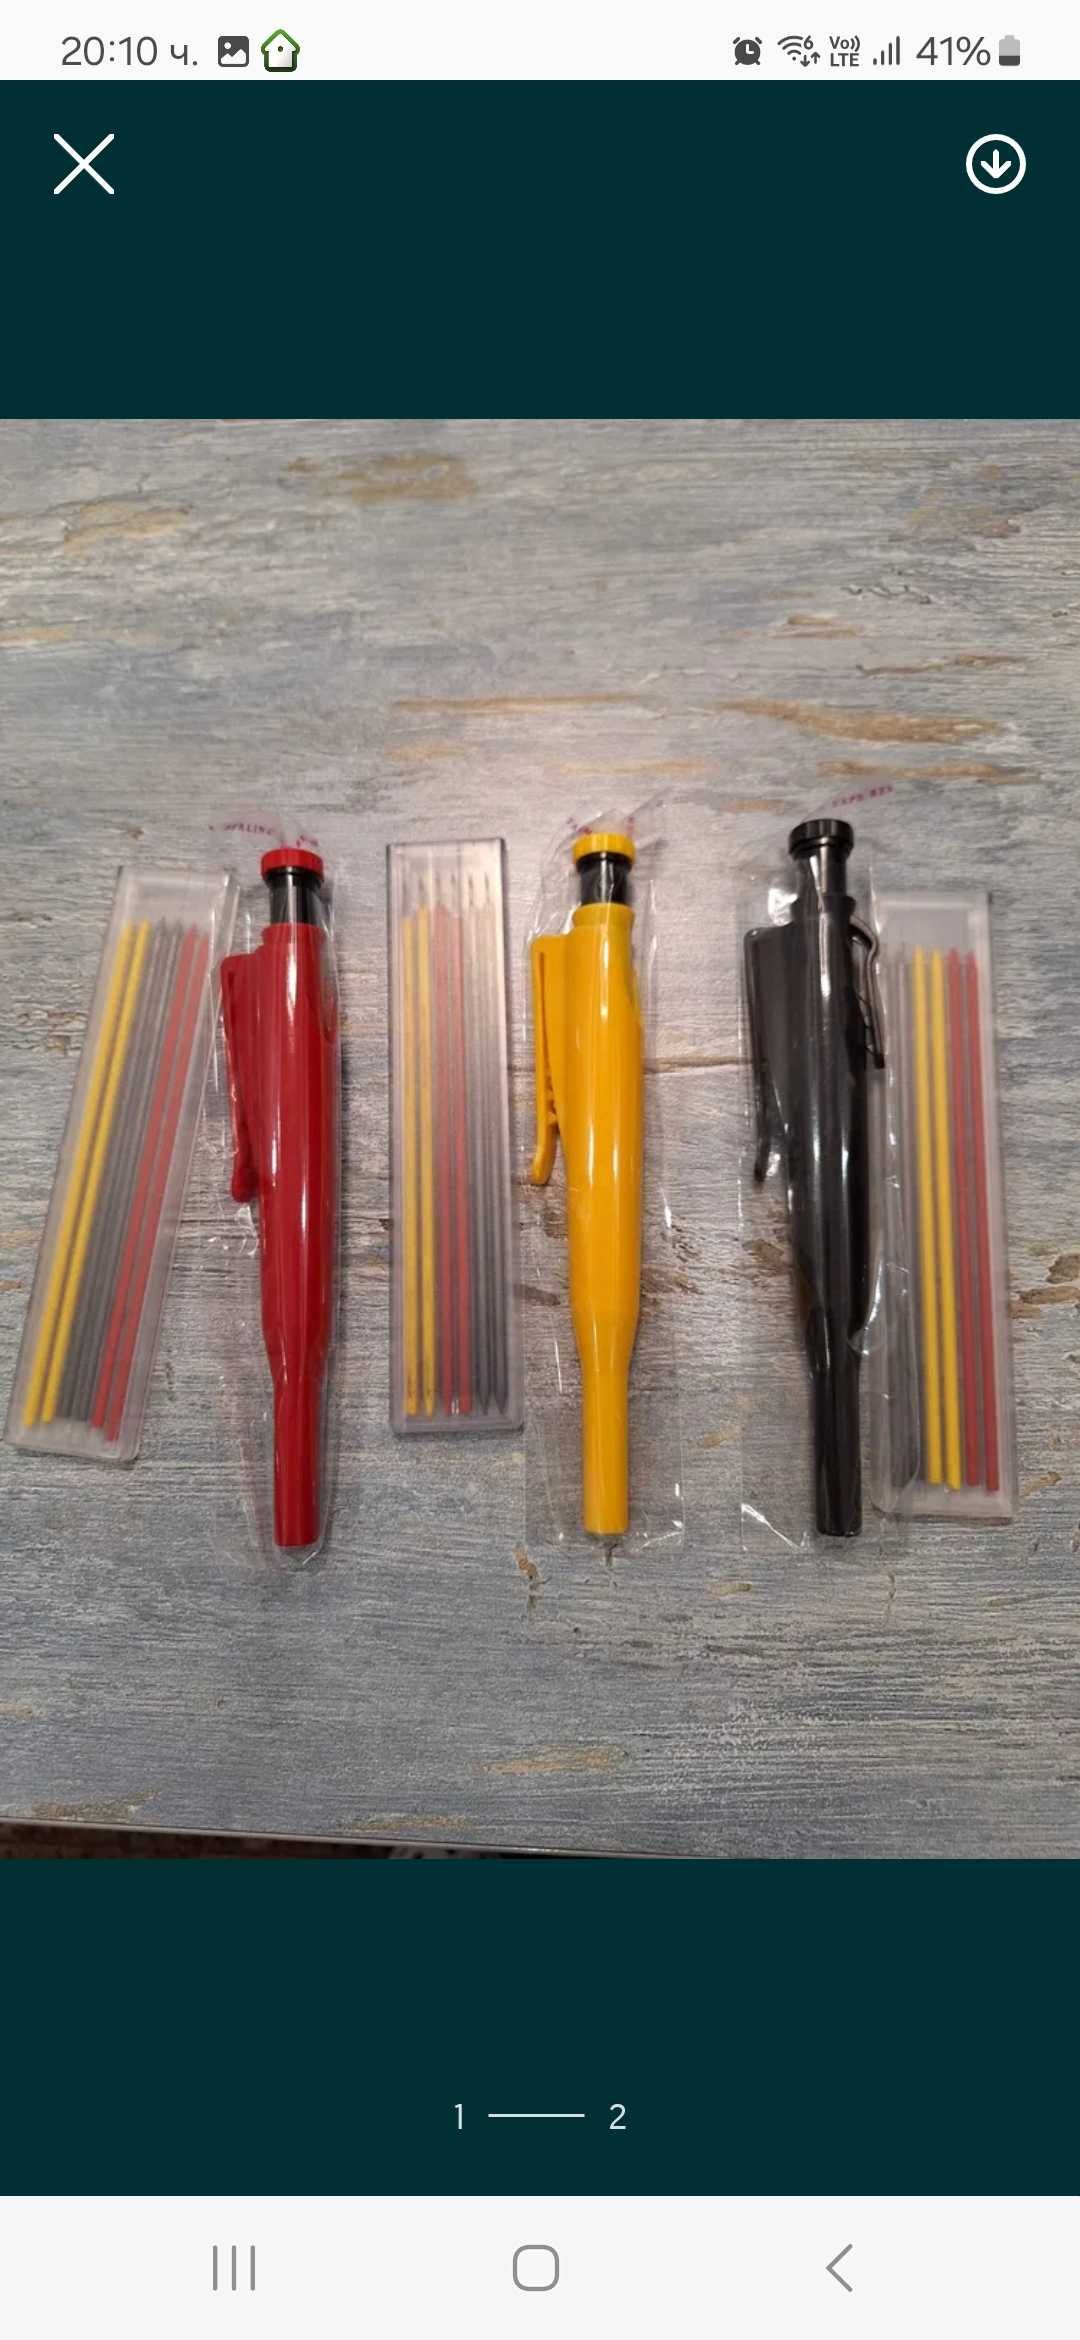 Механичен молив са майстори